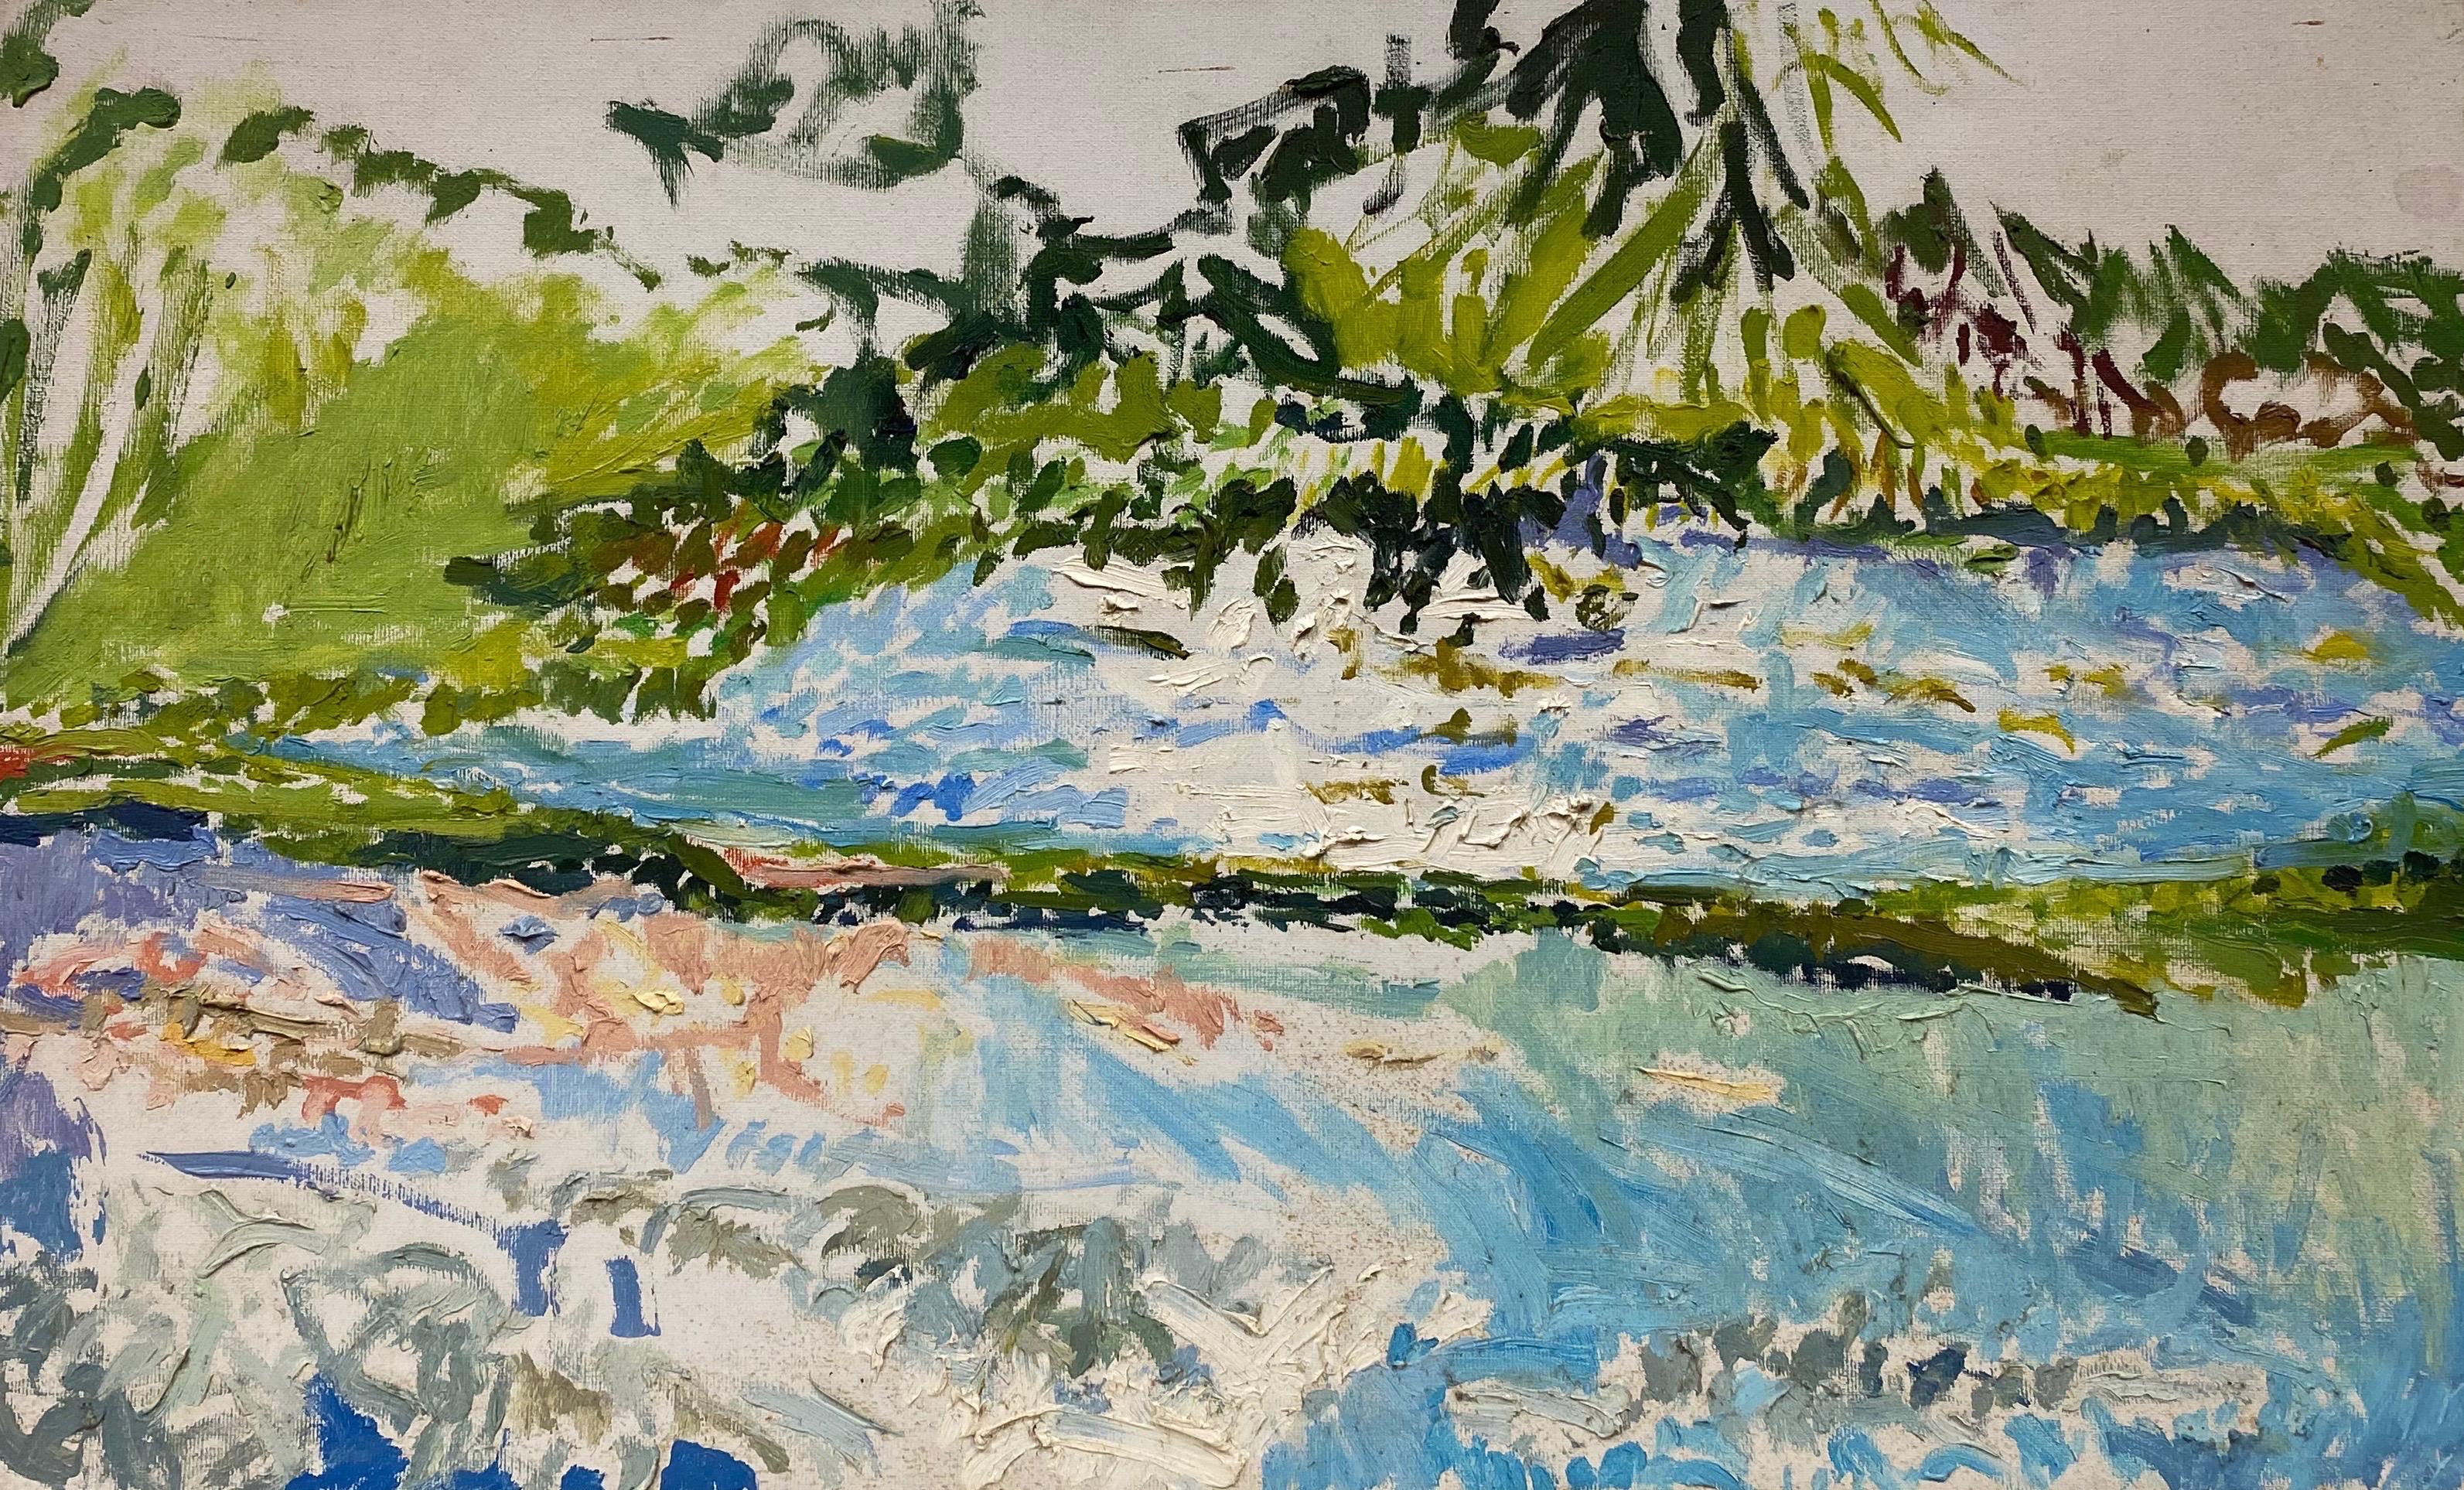 Abstract Painting Douglas Stuart Allen - Peinture à l'huile impressionniste - paysage vert et bleu